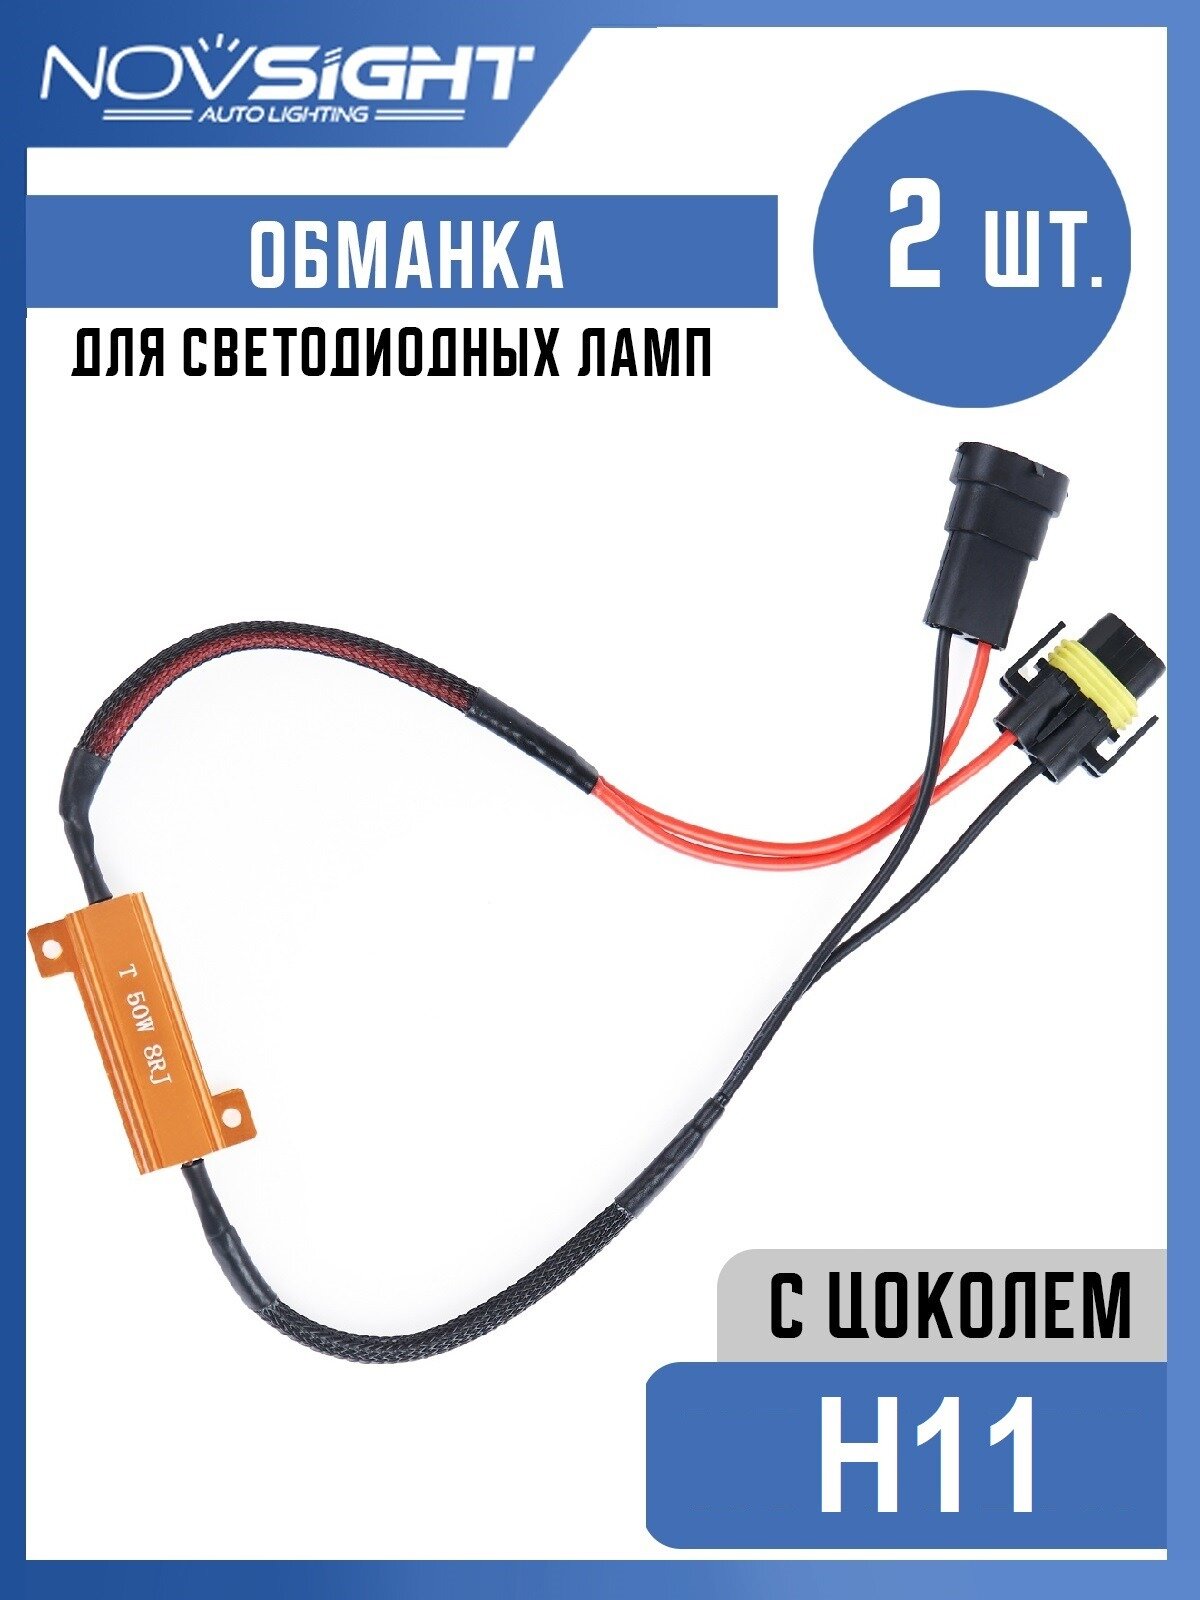 Обманка Canbus для ламп H11 цоколь PGJ19-2 50 Вт 8 Ом 2шт Нагрузочный резистор светодиодных